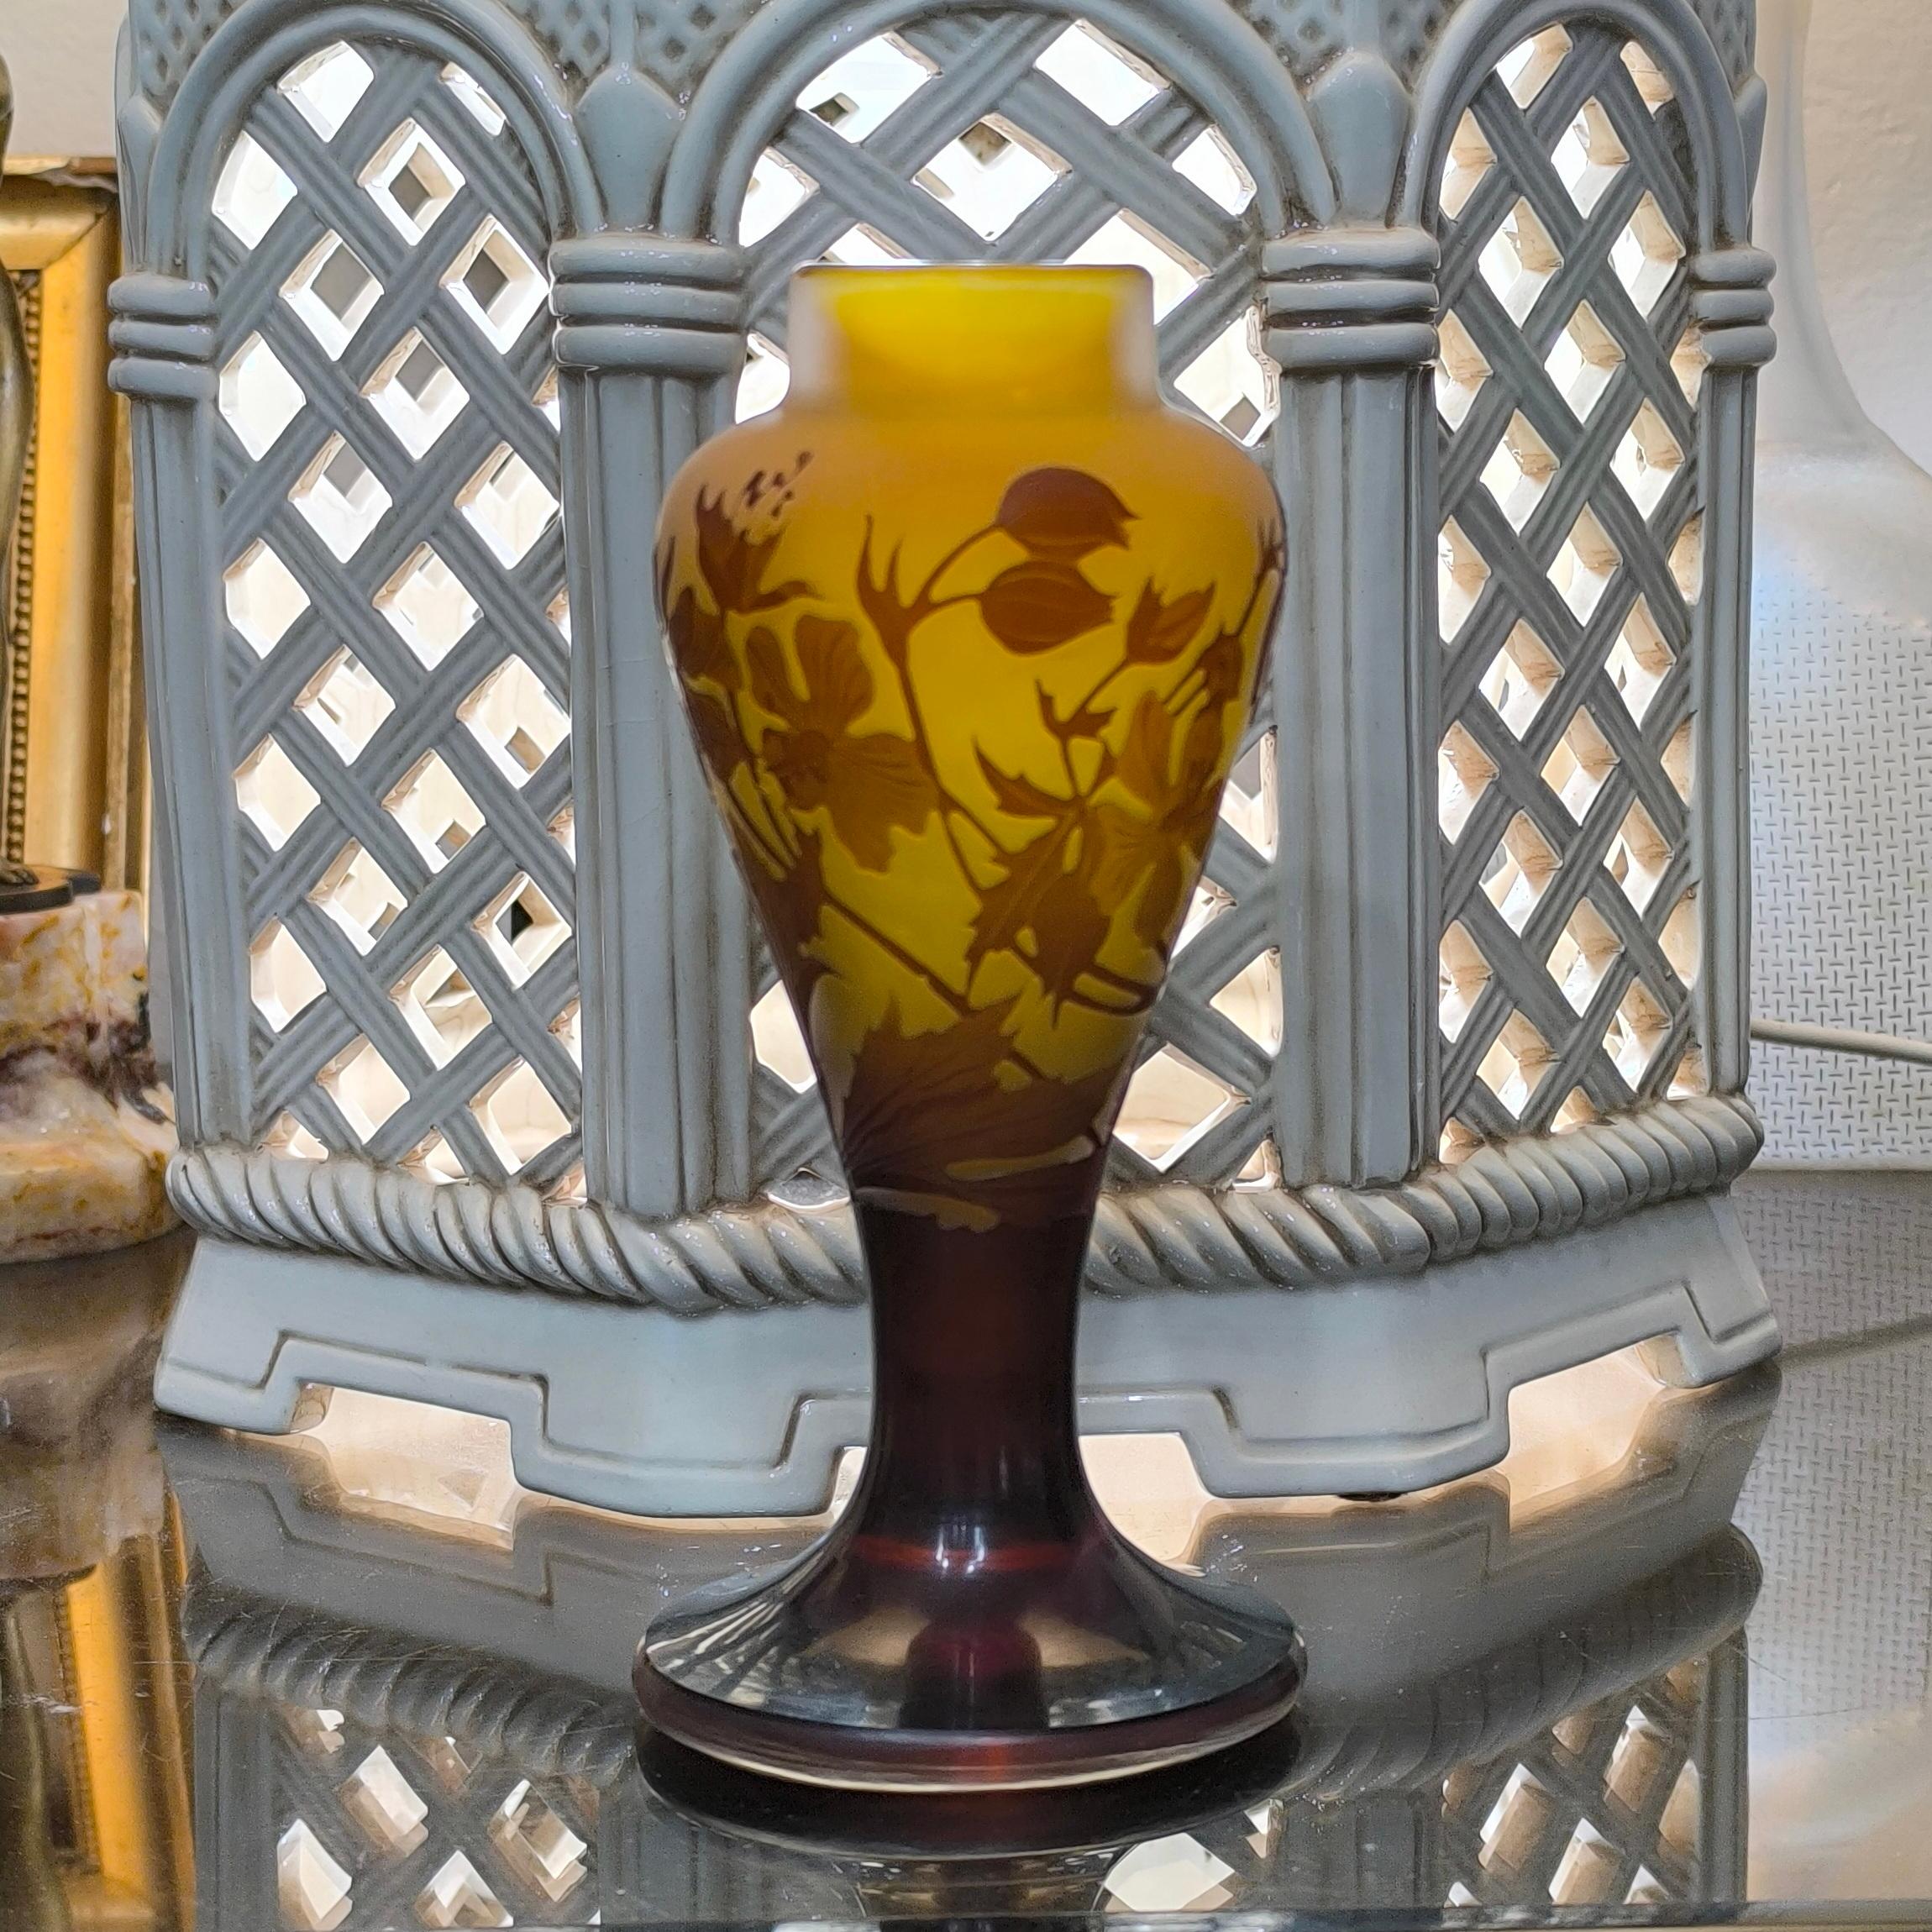 Vase en verre Camée d'Emile Gallé, richement décoré de Branch avec des fleurs, des éclosions et des feuilles de clématite.
En forme de petit balustre, ce magnifique vase est fait de verre multicouche, gravé à l'acide et taillé à la